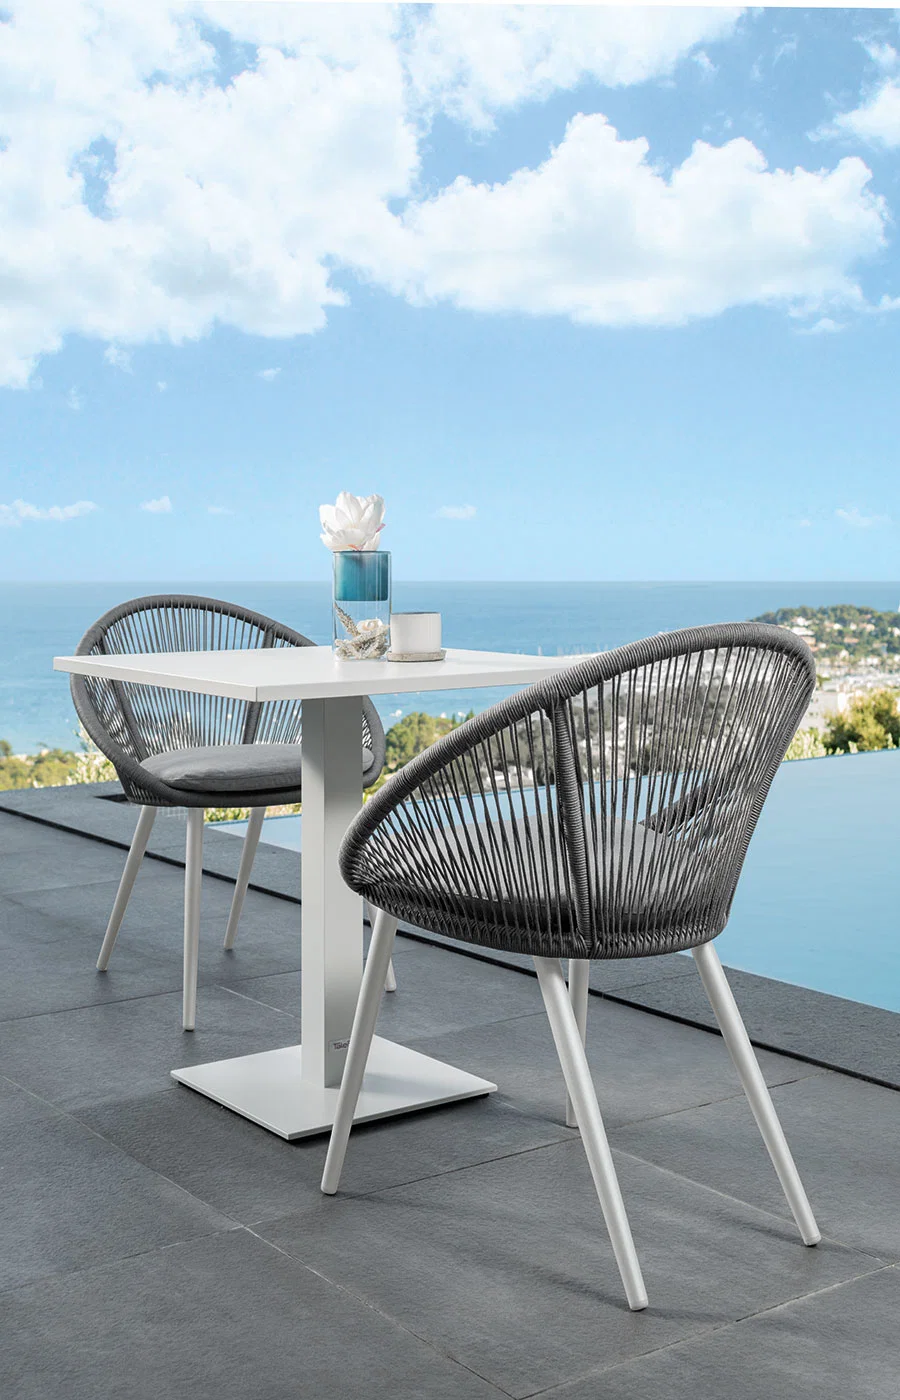 Hotel Family Yacht Deck Outdoor Dining Table Sillas de comedor pueden Sea personalizado juego de muebles